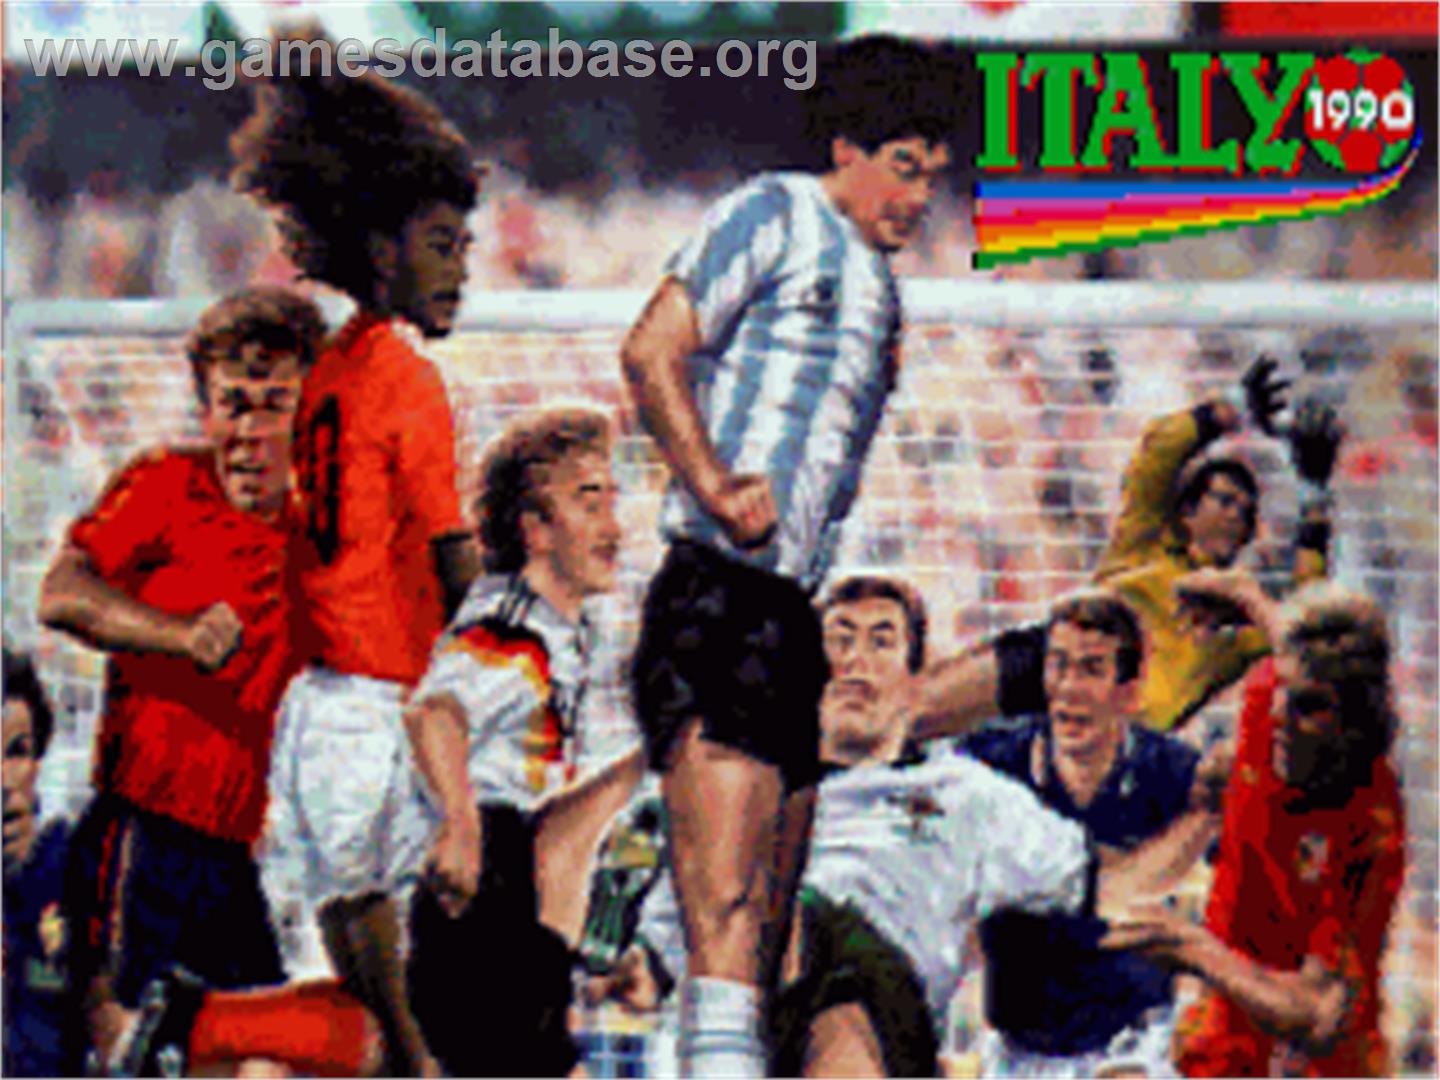 Italia 1990 - Commodore Amiga - Artwork - Title Screen